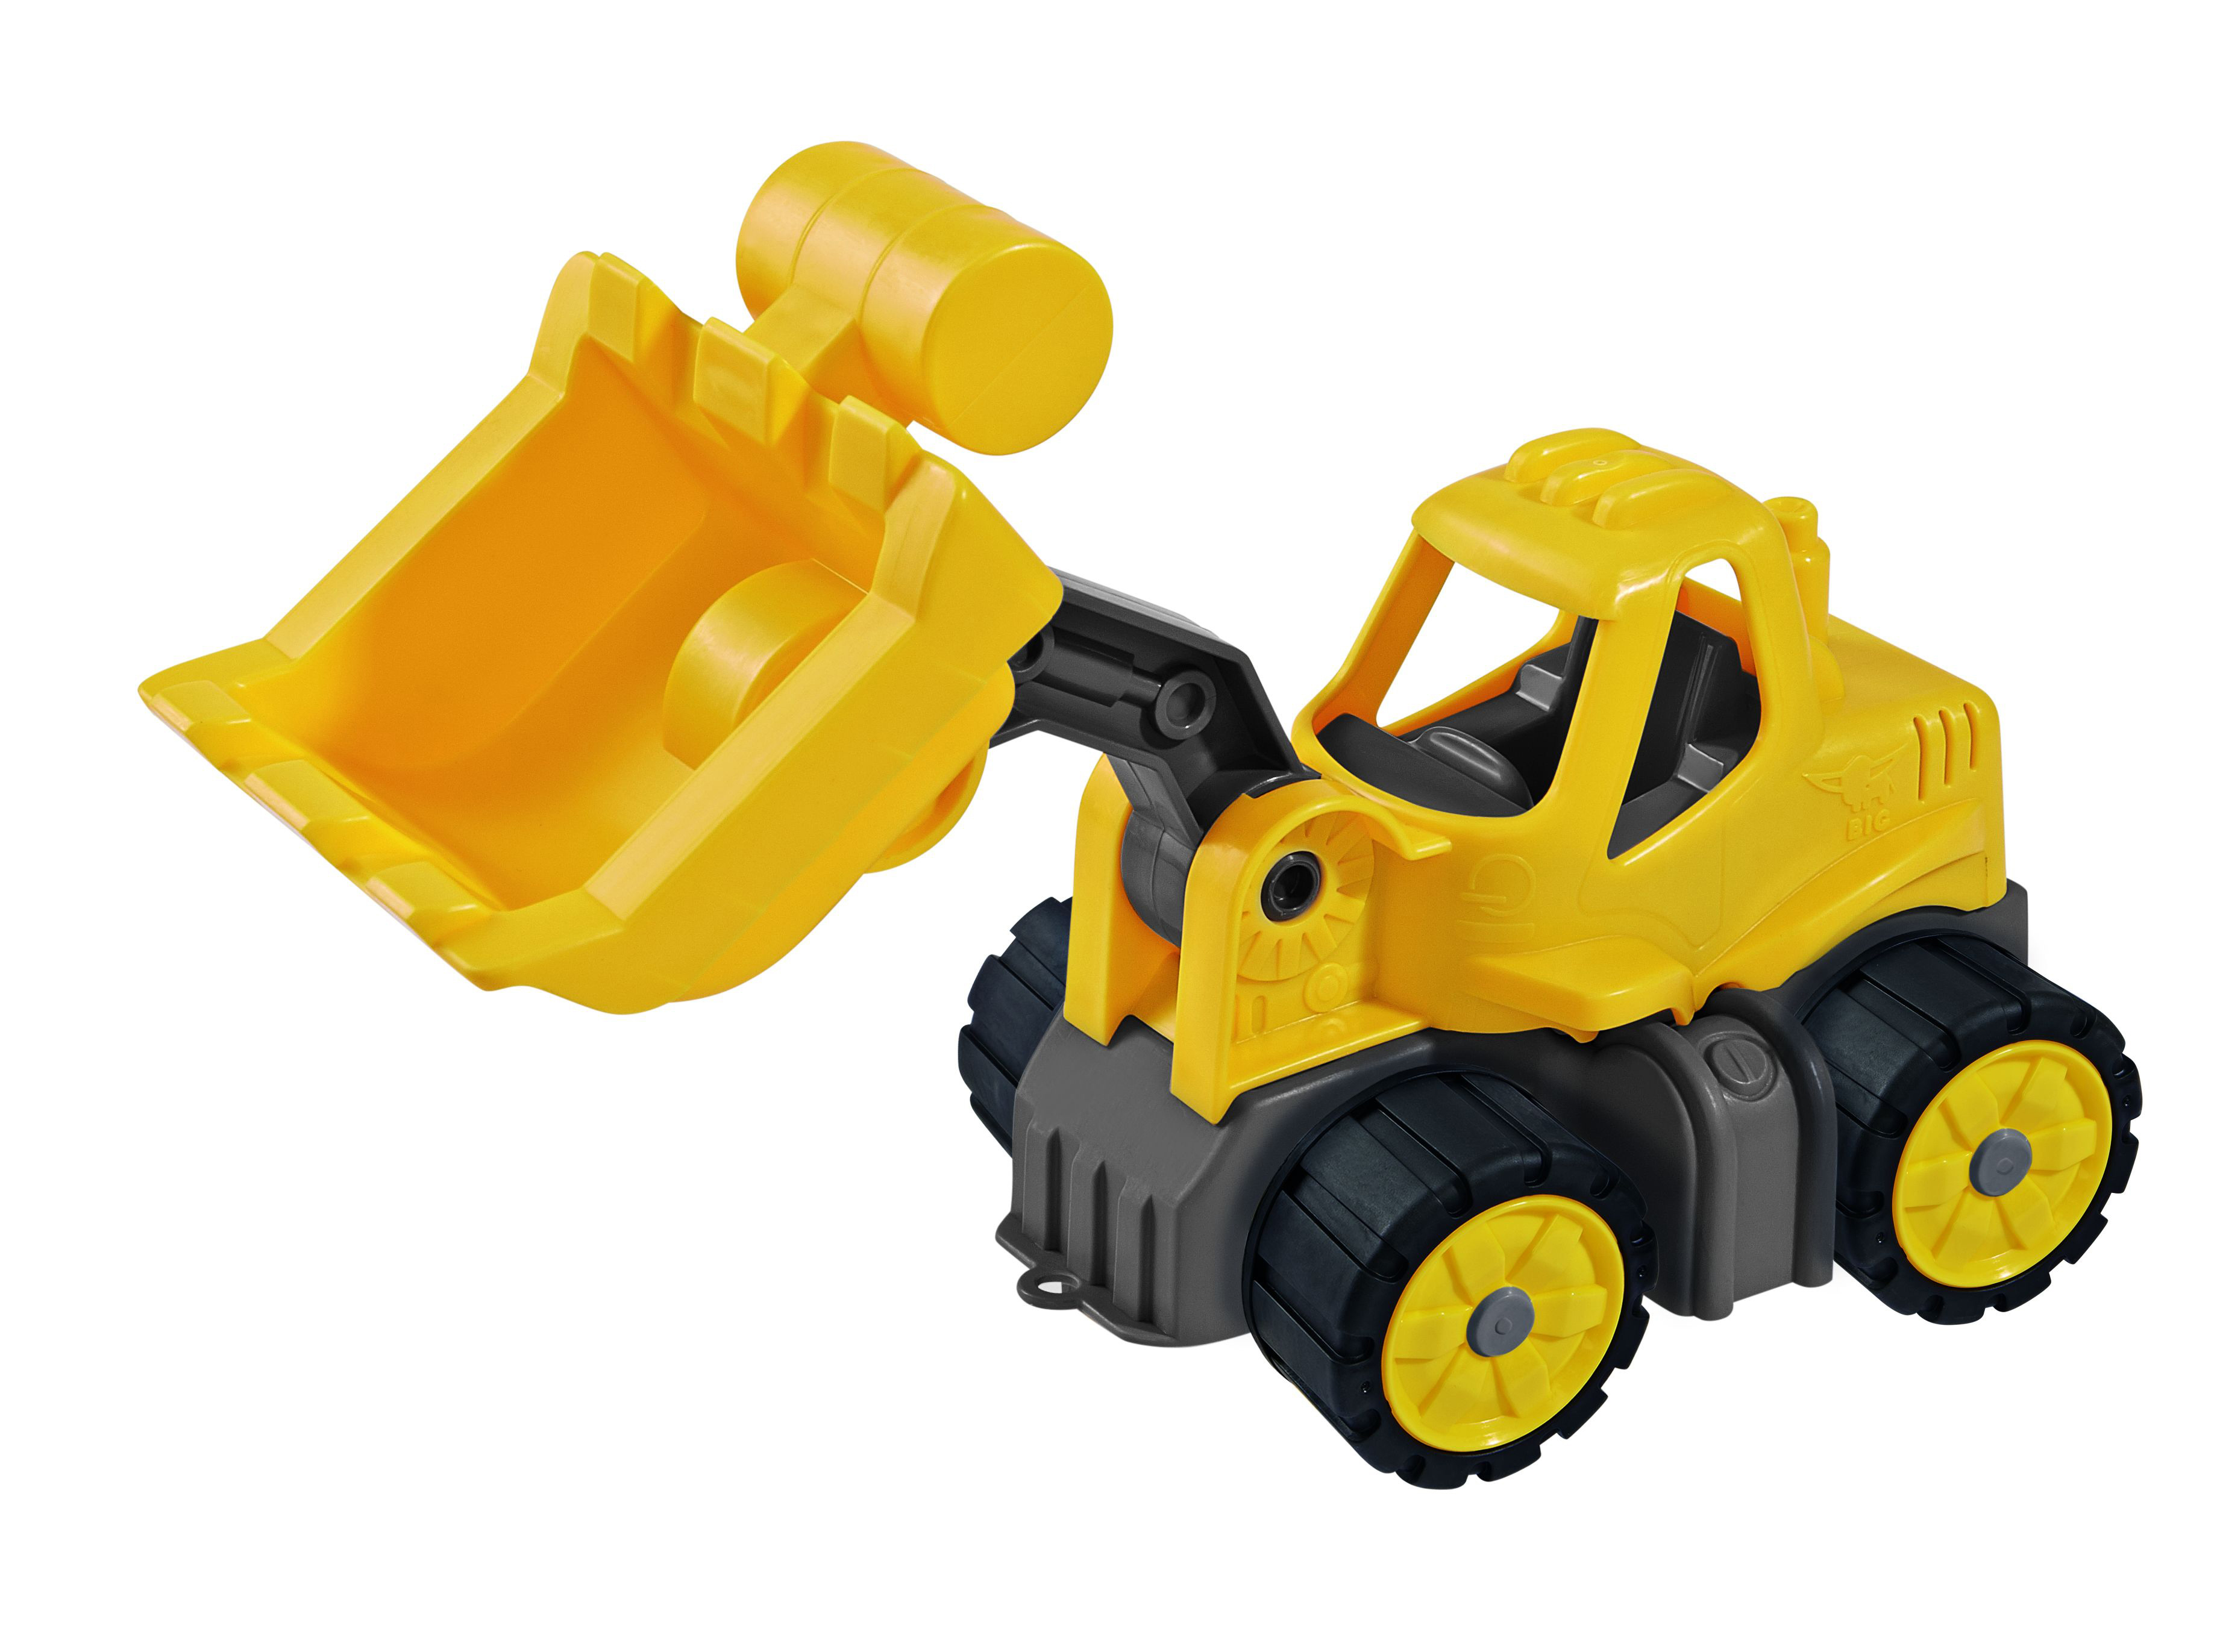 BIG Power-Worker Mini Radlader Spielfahrzeuge